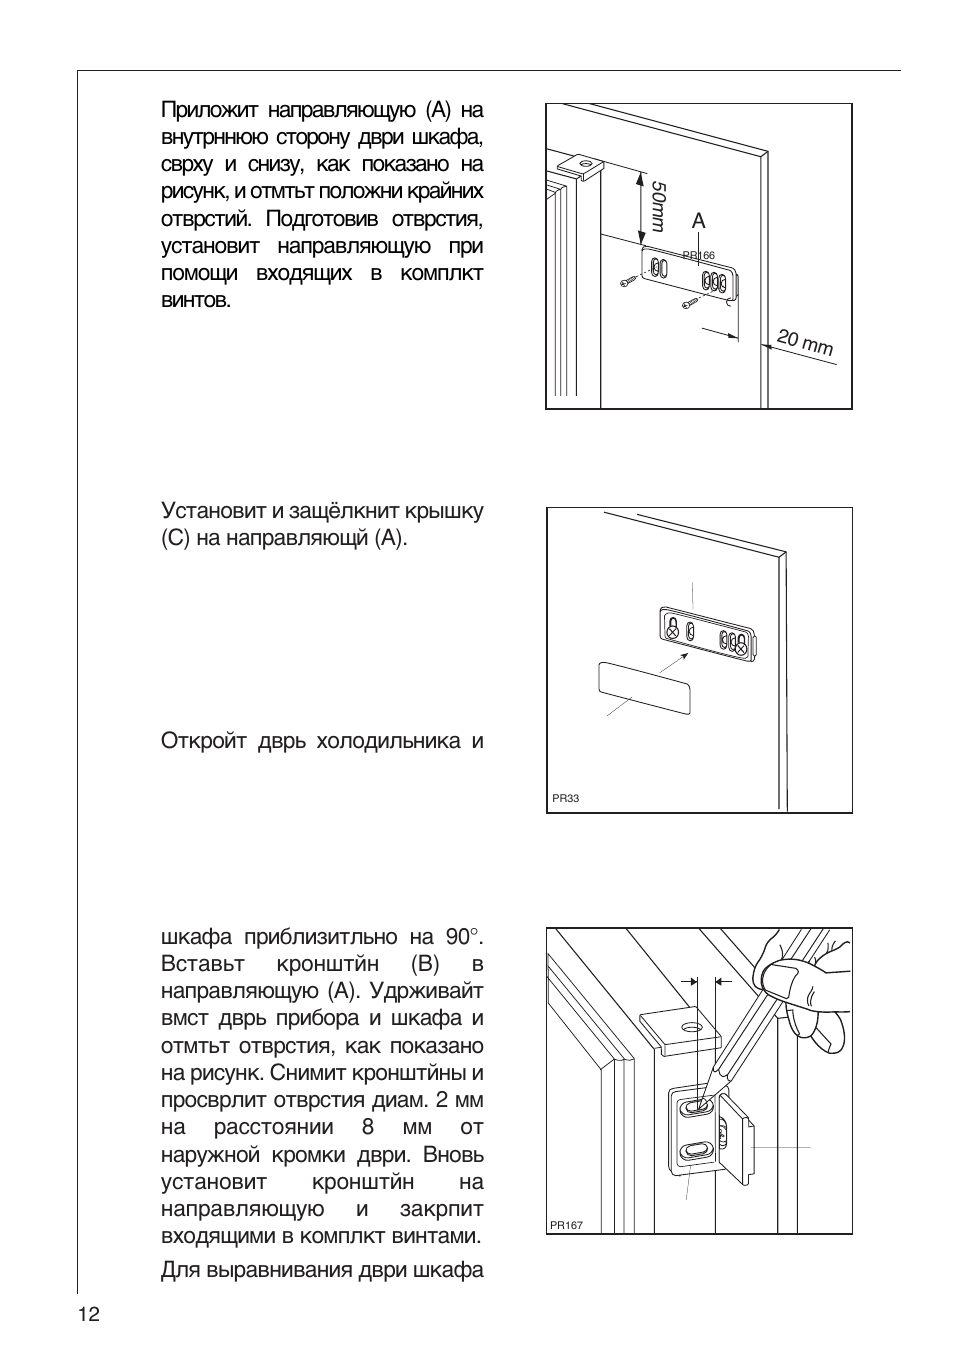 Холодильник AEG Electrolux инструкция